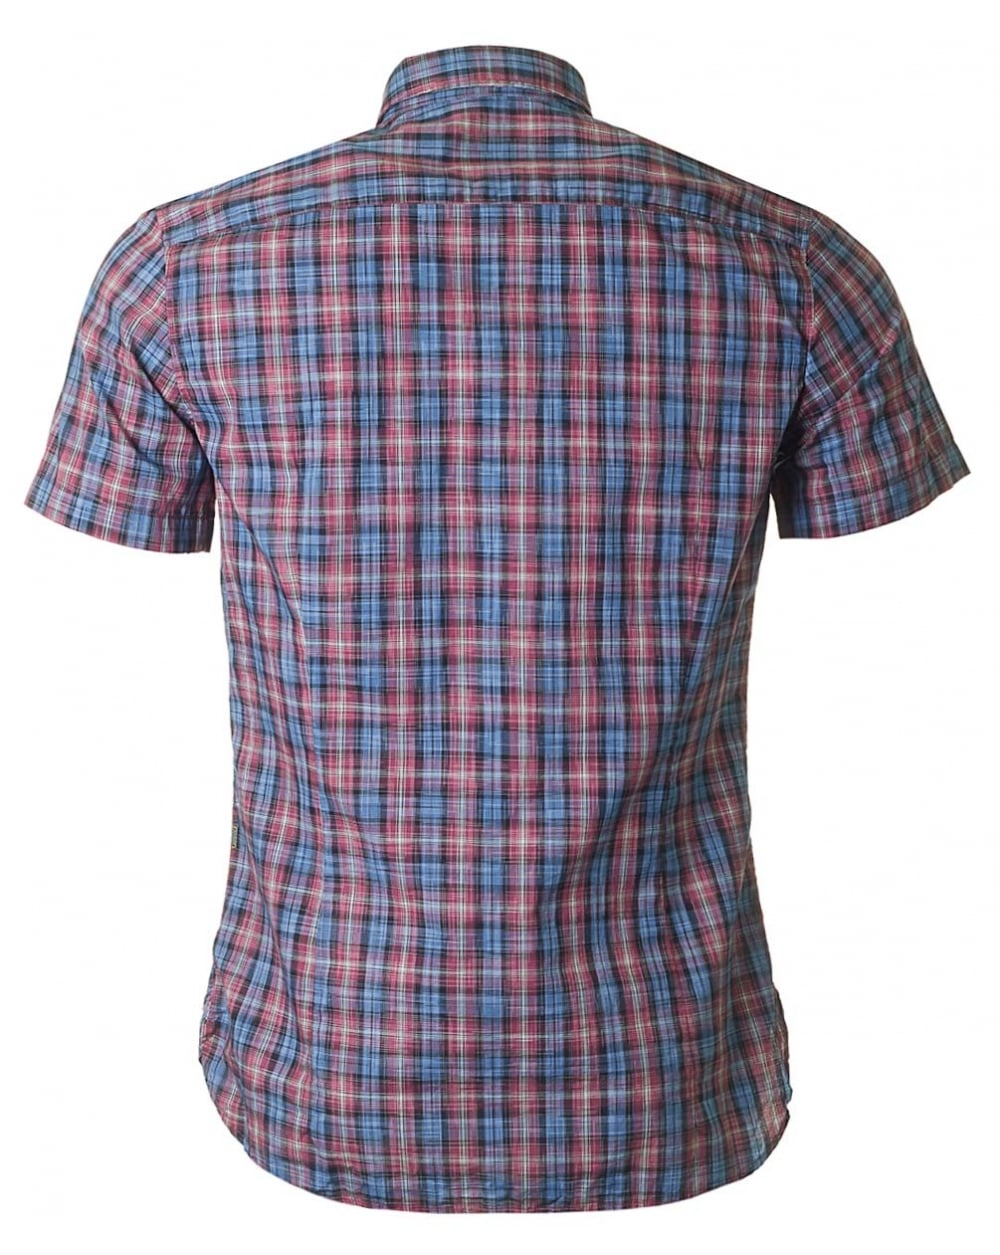 Hugo Boss Cattitude Short Sleeve Shirt - Ignition For Men